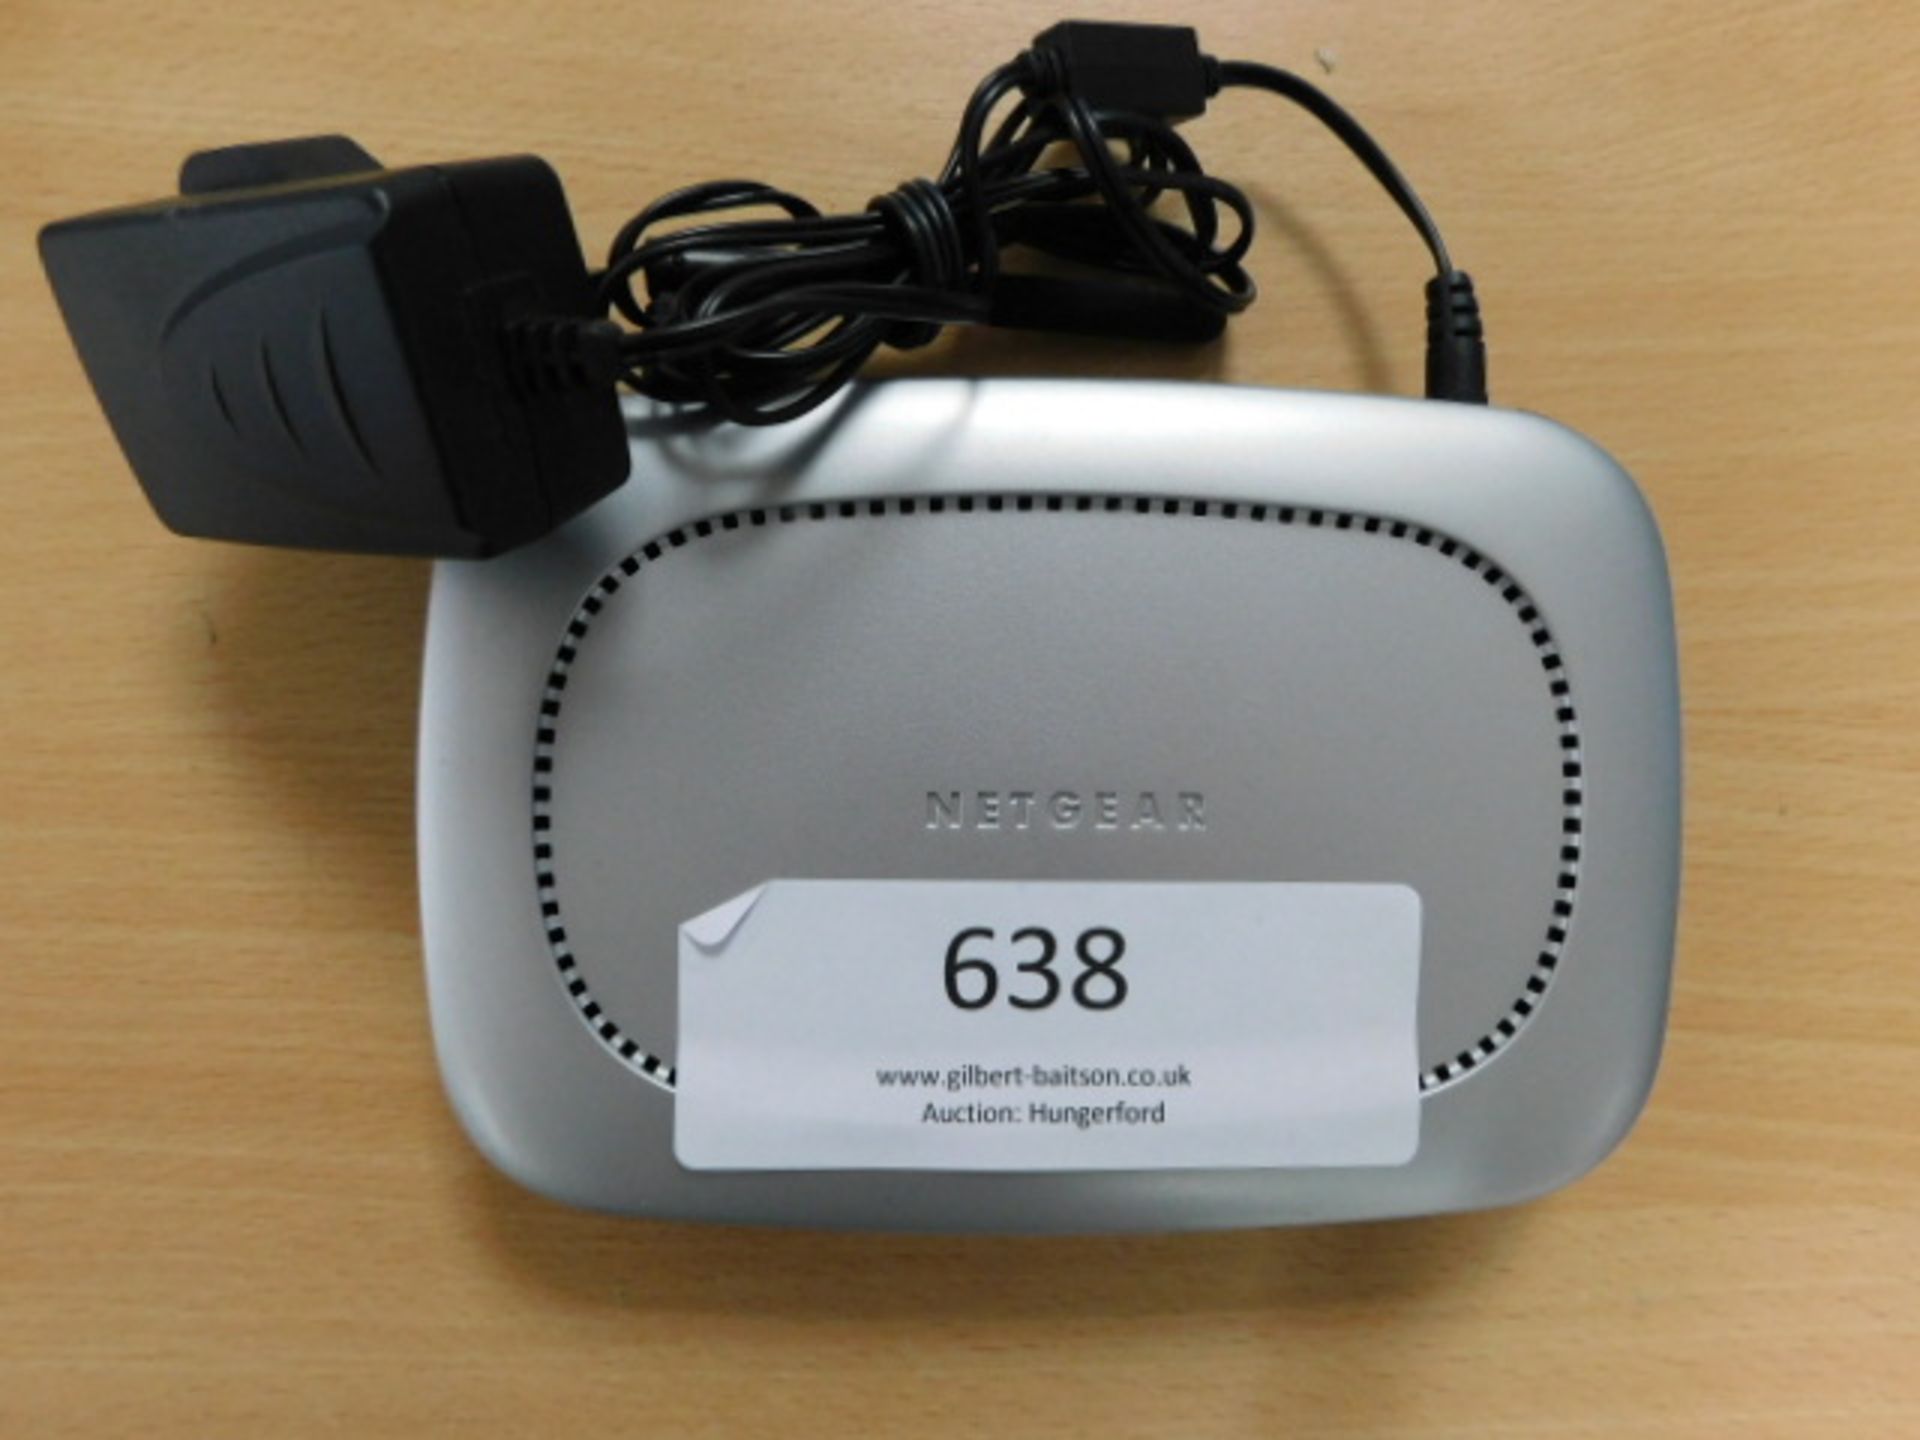 *Netgear WG602 Wireless Router